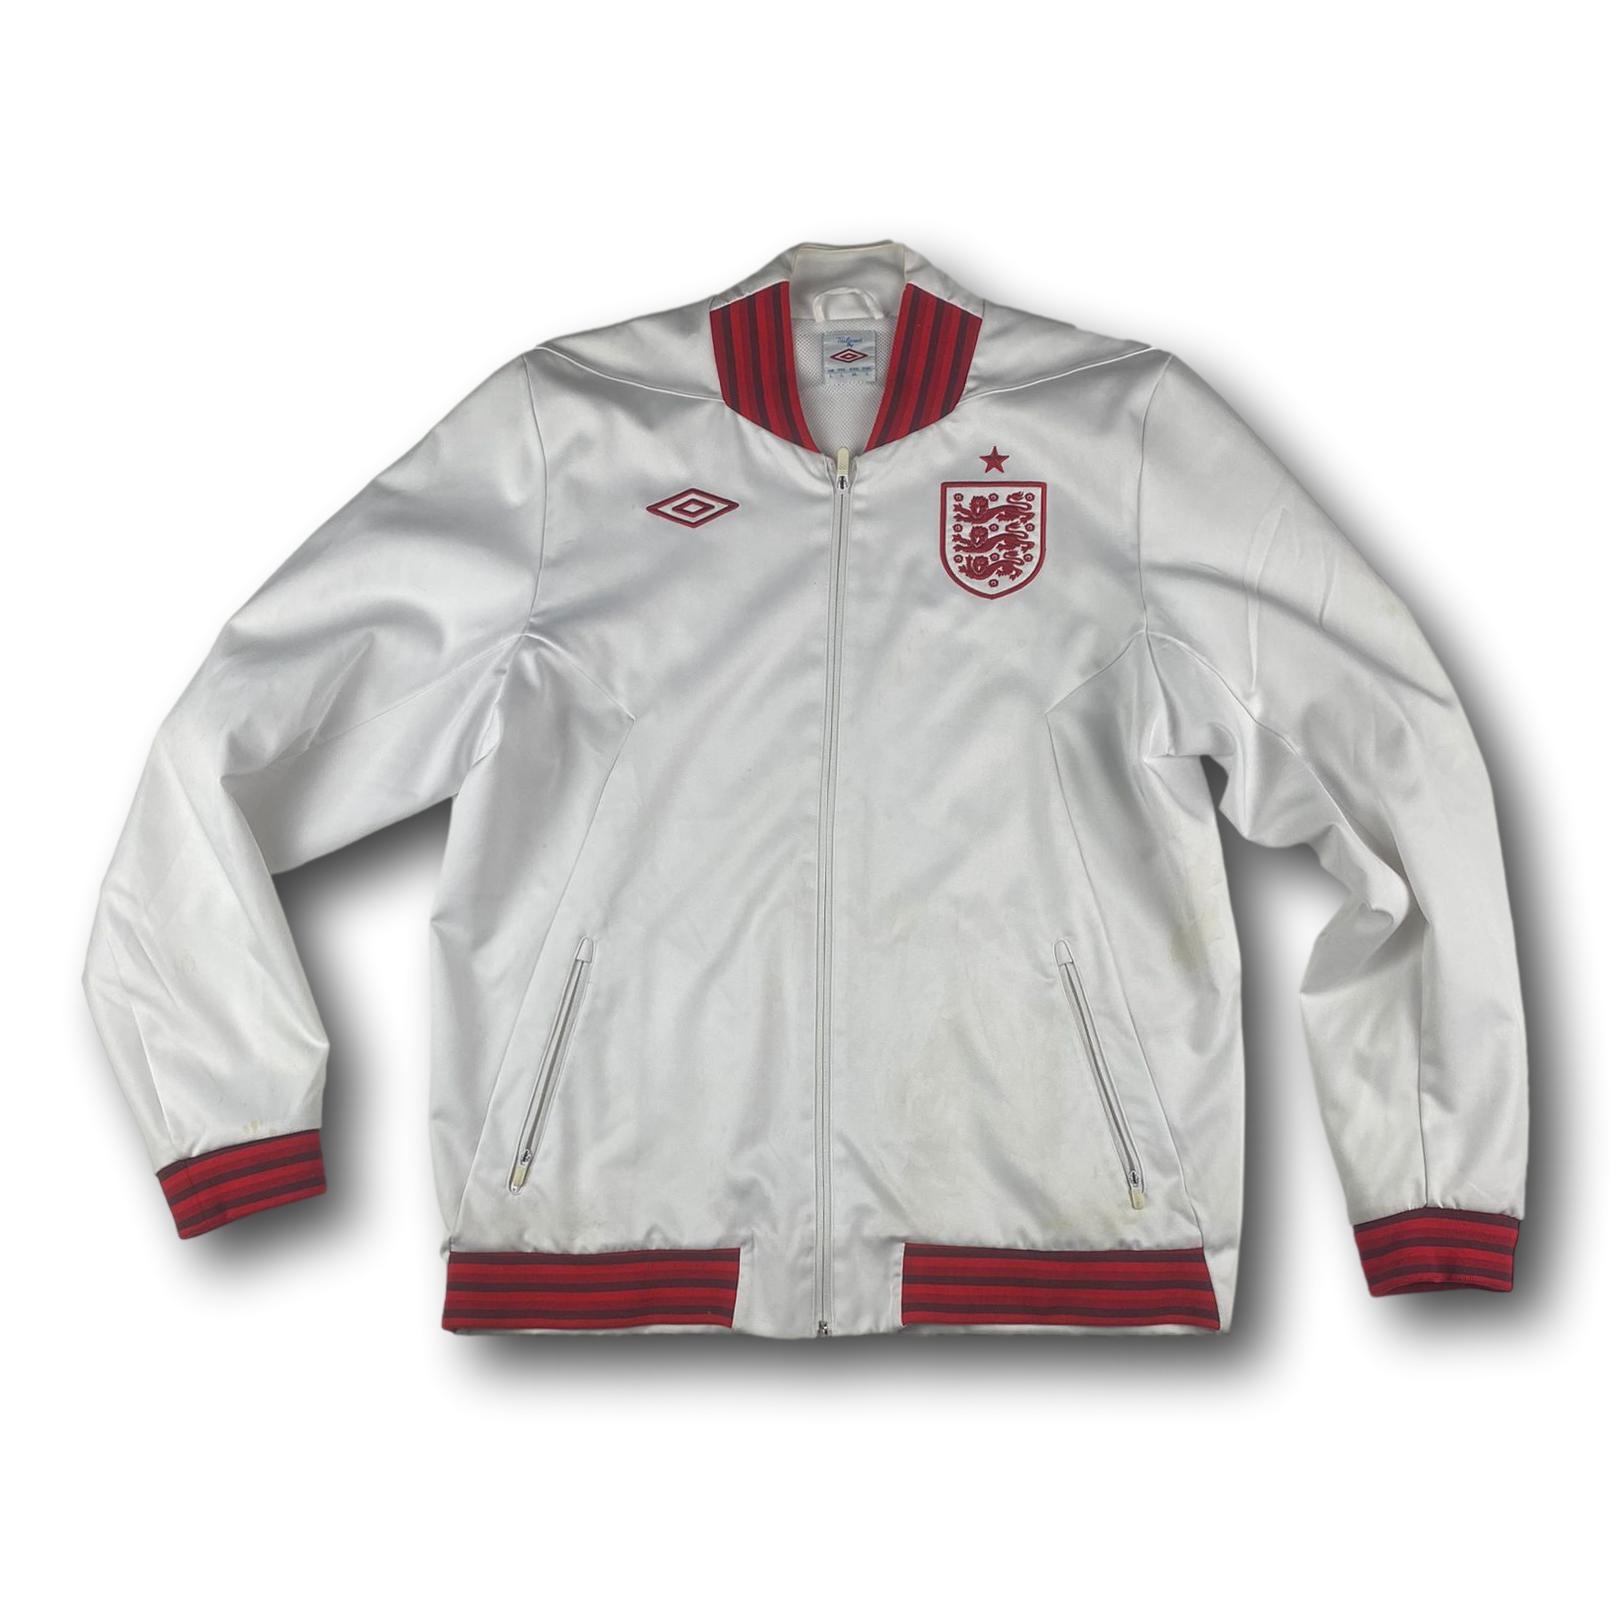 England retro training jacket L umbro